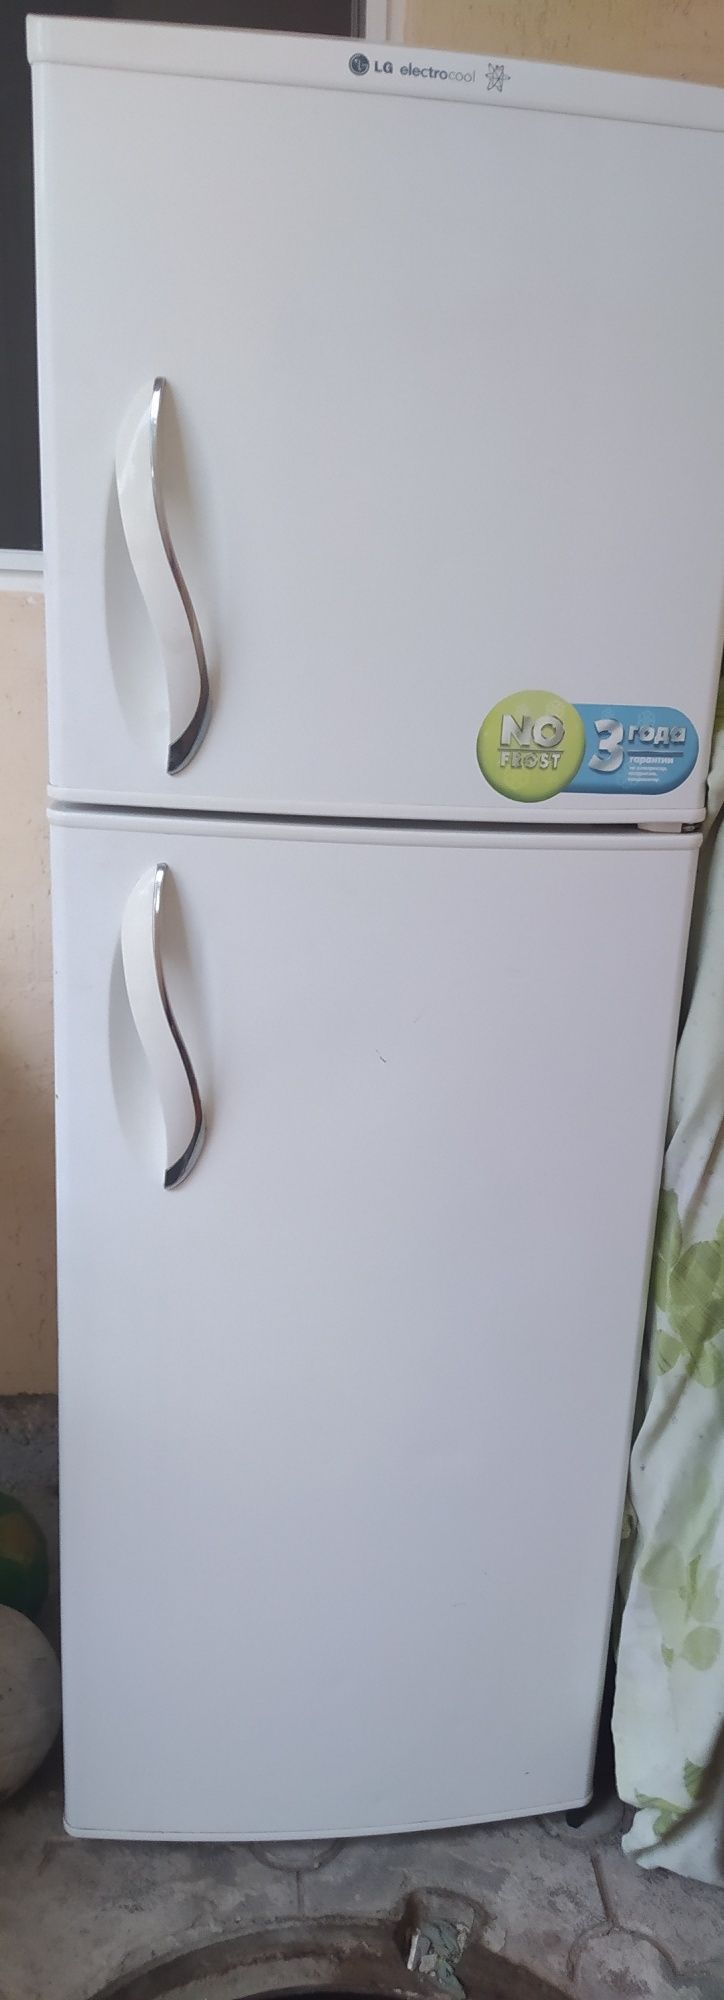 Продается холодильник LG